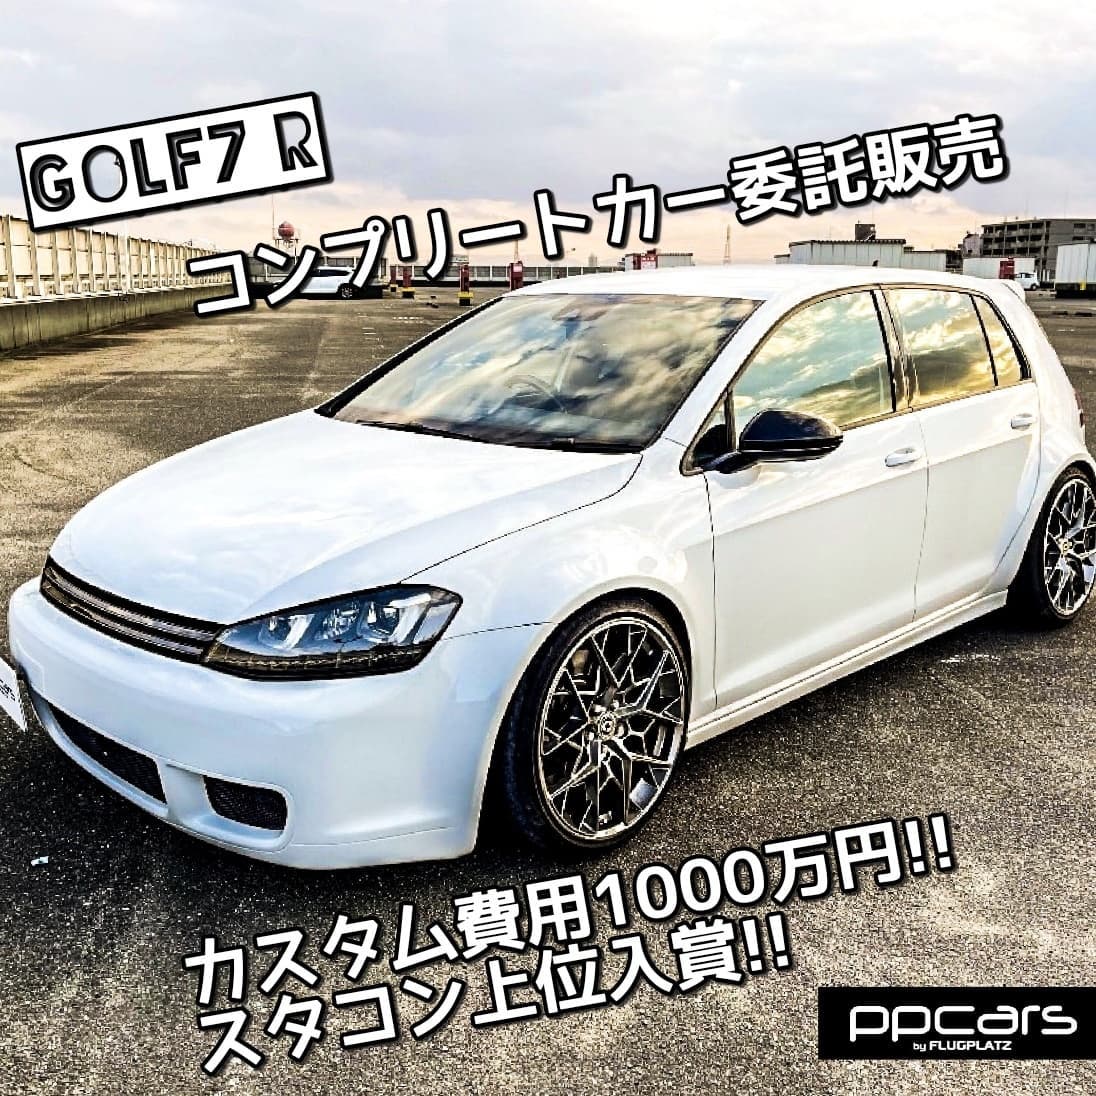 委託販売!! Golf7 R (5G) x フルカスタム | スタコン入賞車両!!